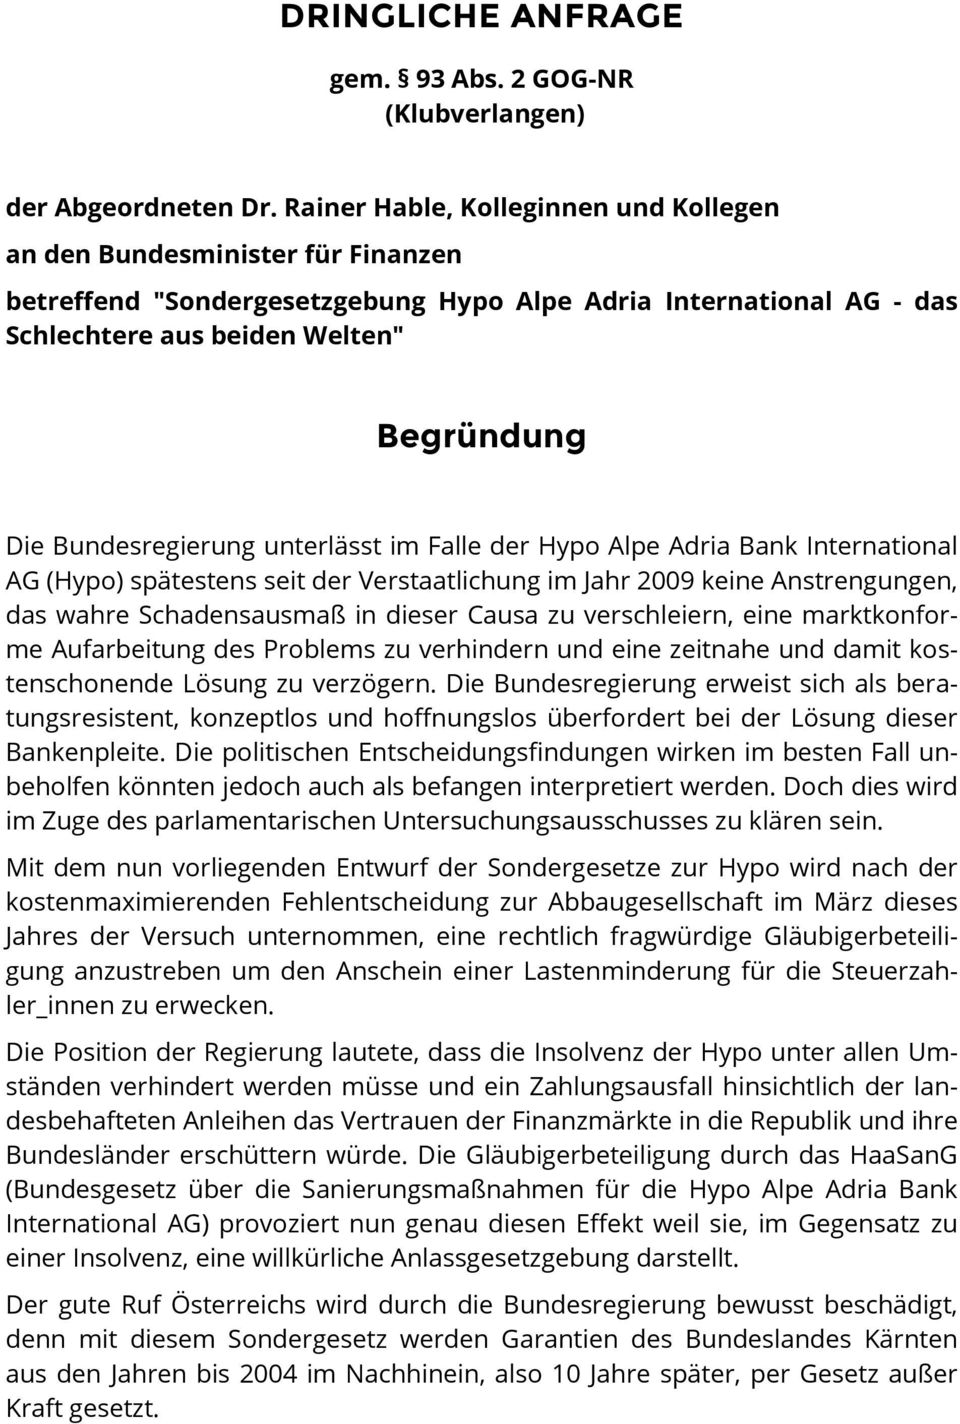 Bundesregierung unterlässt im Falle der Hypo Alpe Adria Bank International AG (Hypo) spätestens seit der Verstaatlichung im Jahr 2009 keine Anstrengungen, das wahre Schadensausmaß in dieser Causa zu